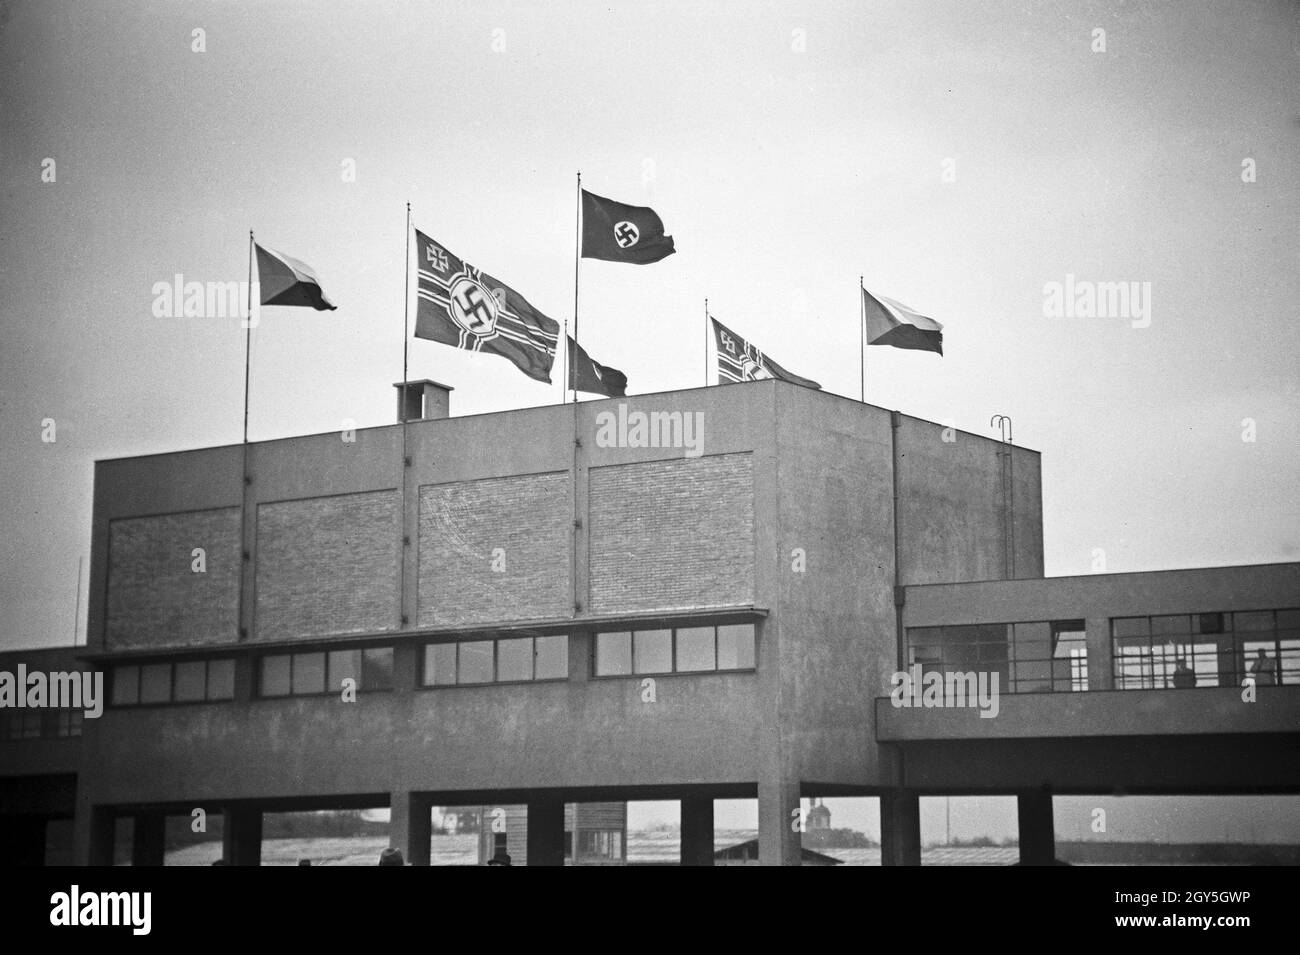 Originalbildunterschrift: Prag, am 20. April im Sokol Stadion, wo die Geburtstagsfeier stattfand, zum ersten Male die Hakenkreuzfahne, rechts und links die tschechische Fahne, 1930er Jahre. Stock Photo